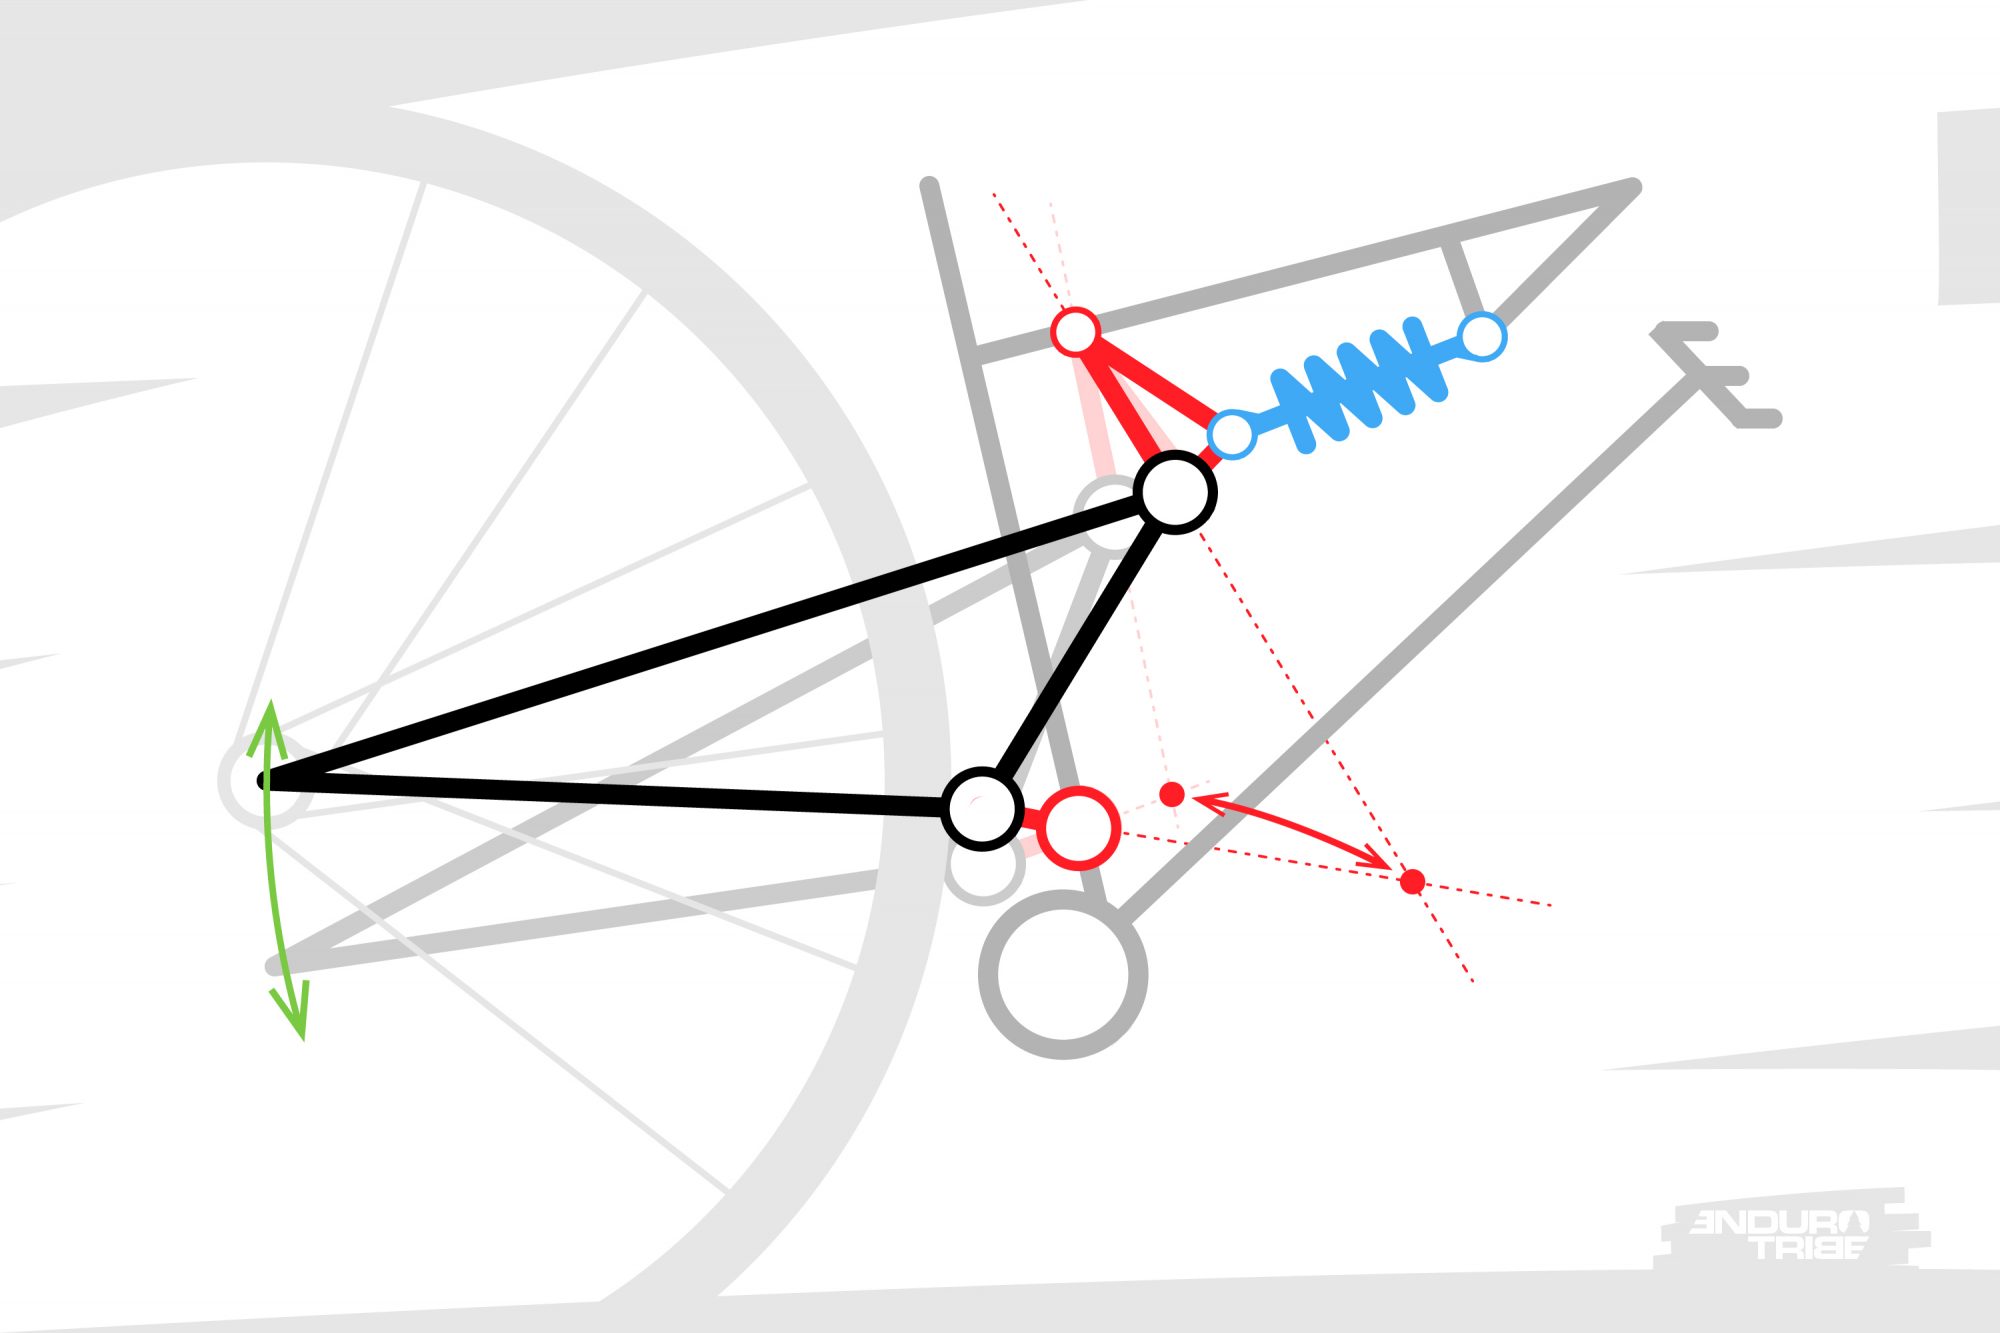 1 : Schématisation du système de suspension au niveau de la roue